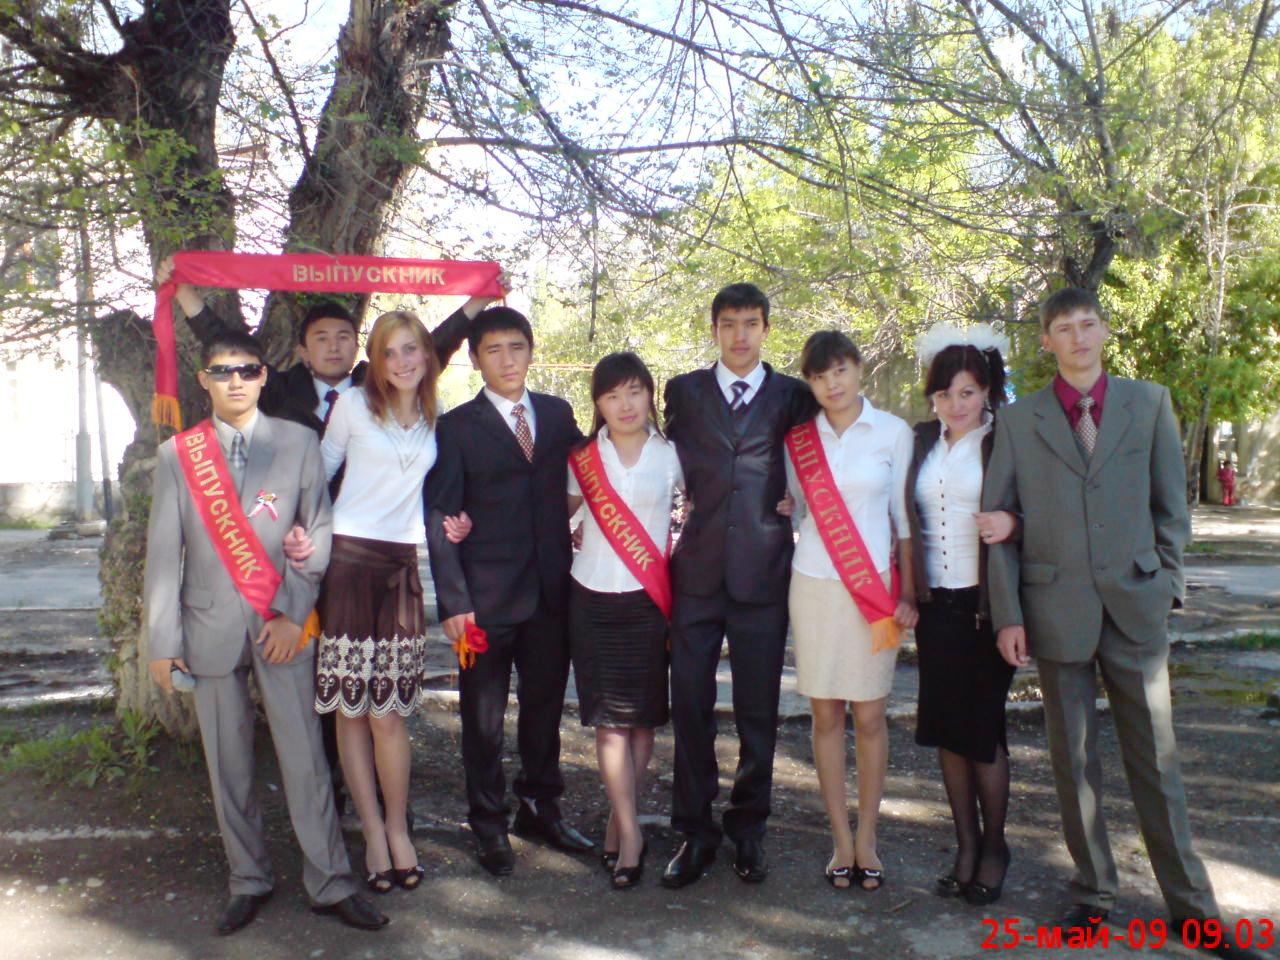 Хайдарканские выпускники 2009 года